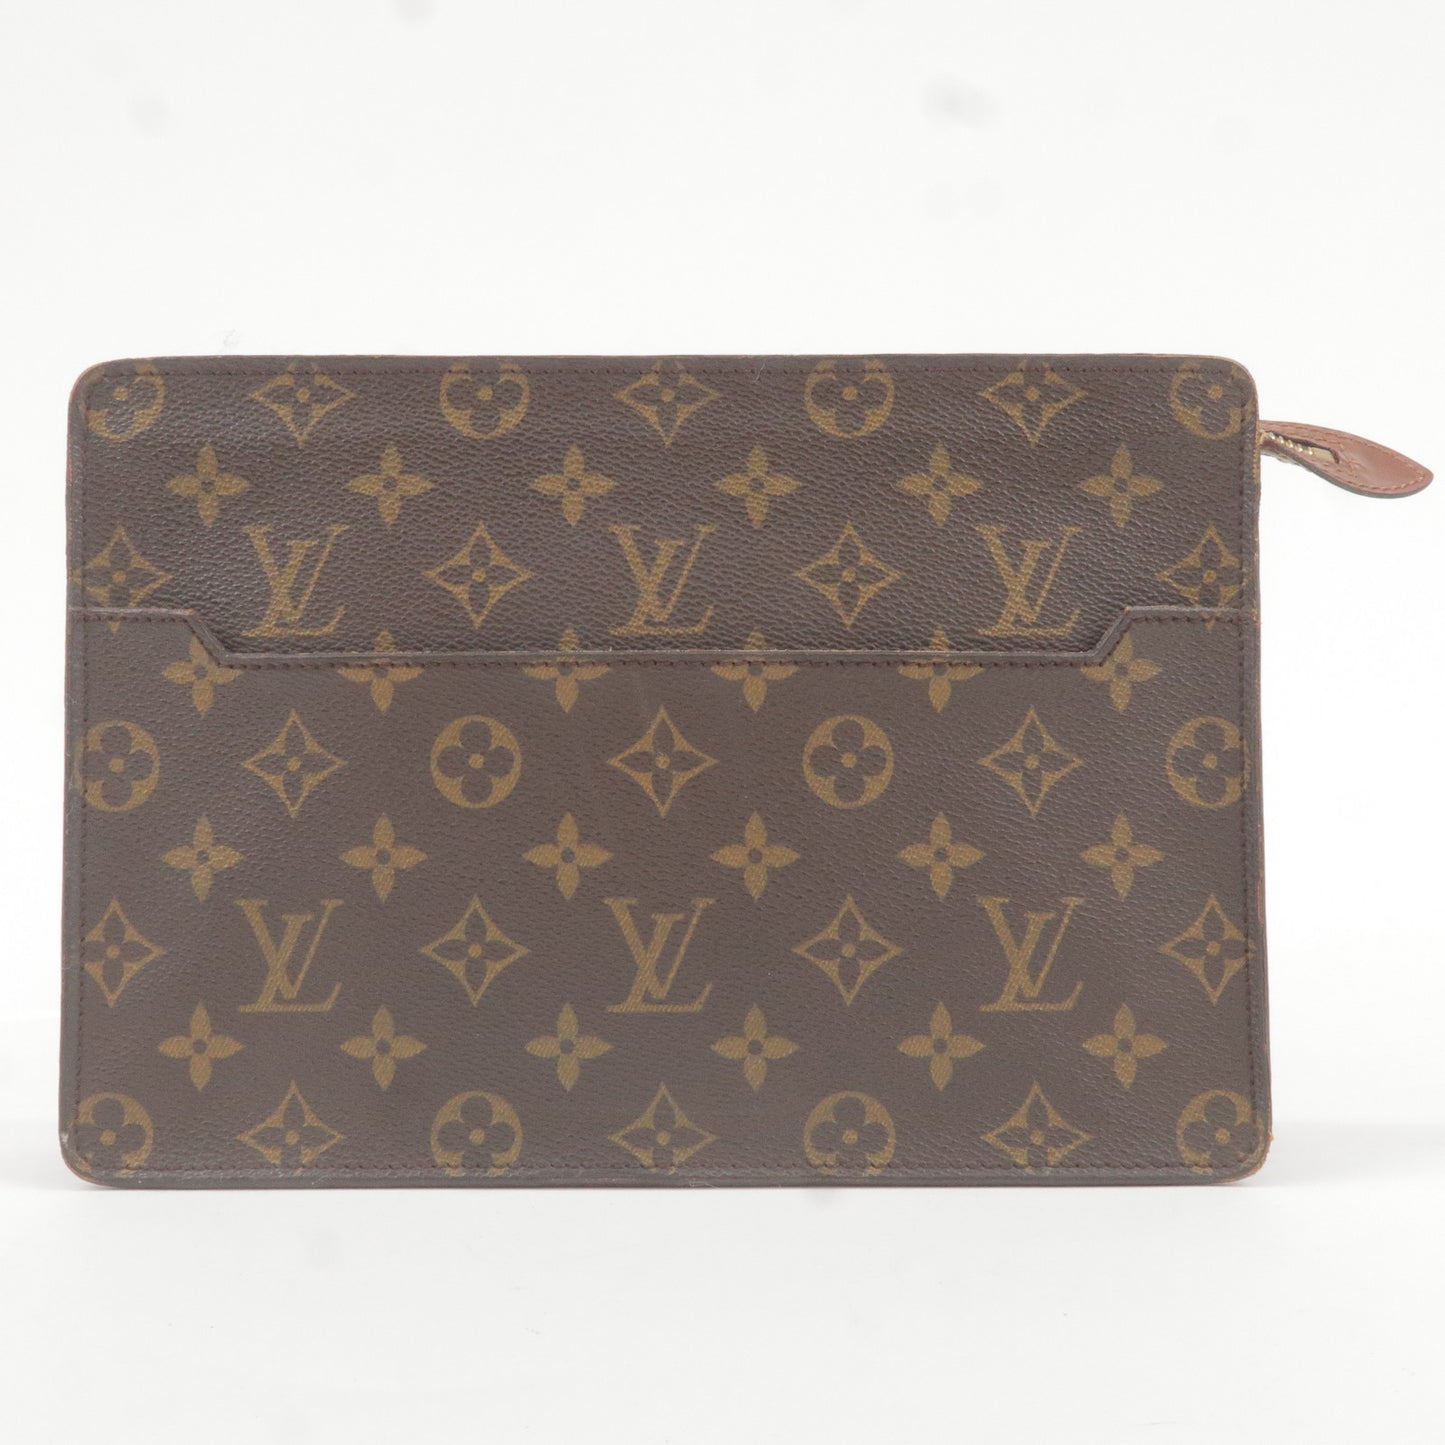 Louis Vuitton Pochette Evening Bag